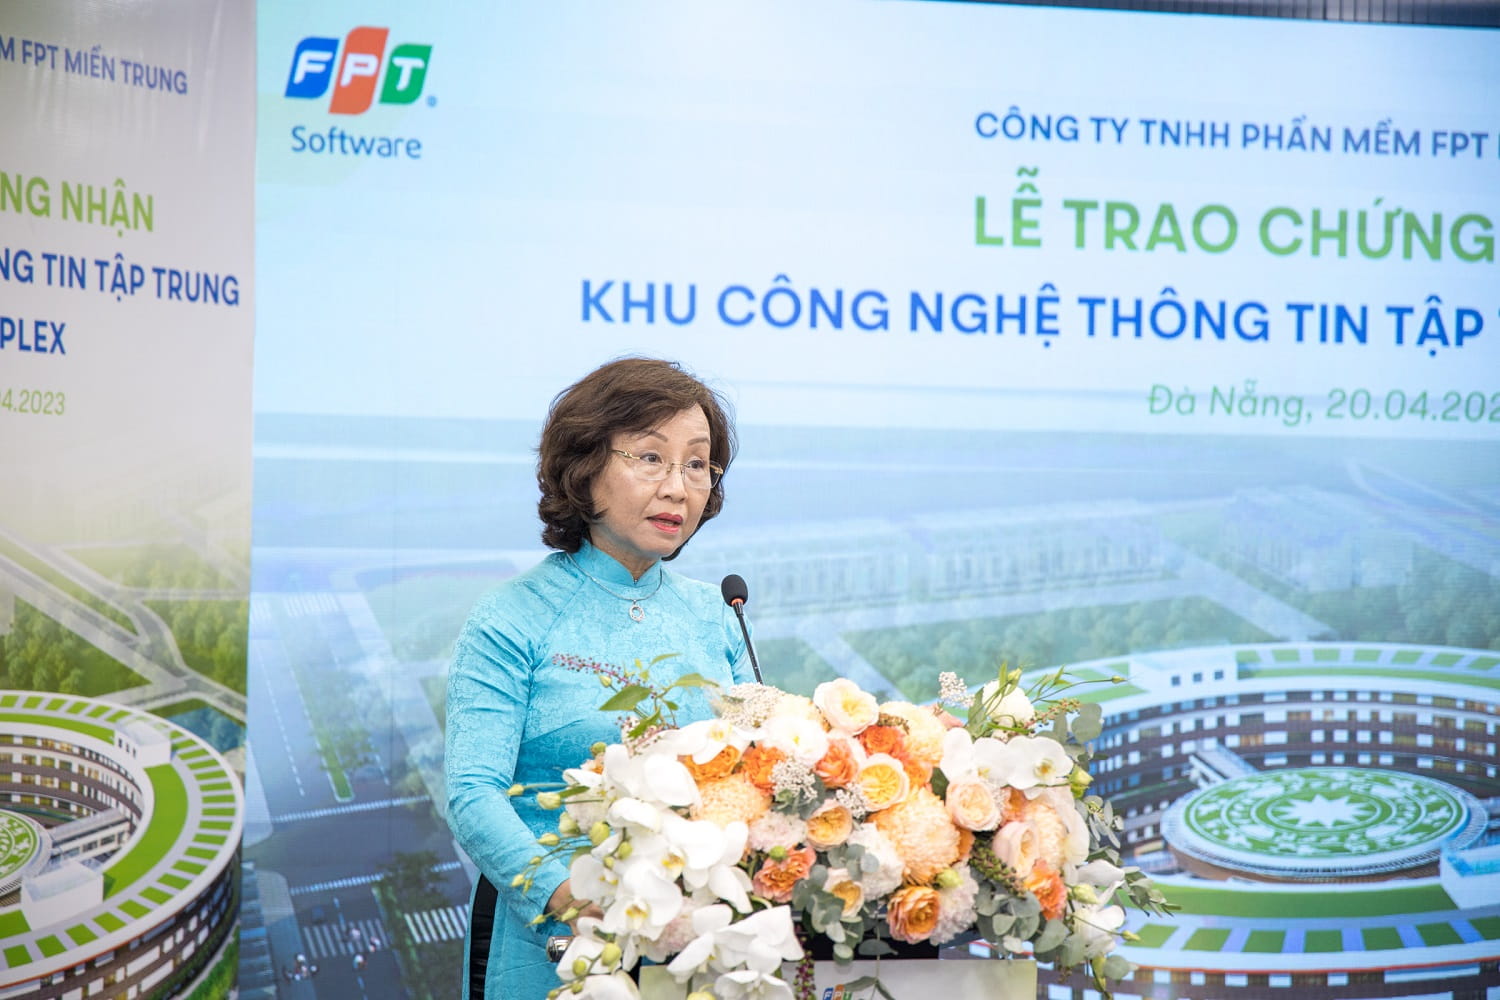 Bà Ngô Thị Kim Yến, Thành ủy viên, Phó Chủ tịch UBND thành phố chia sẻ tại sự kiện